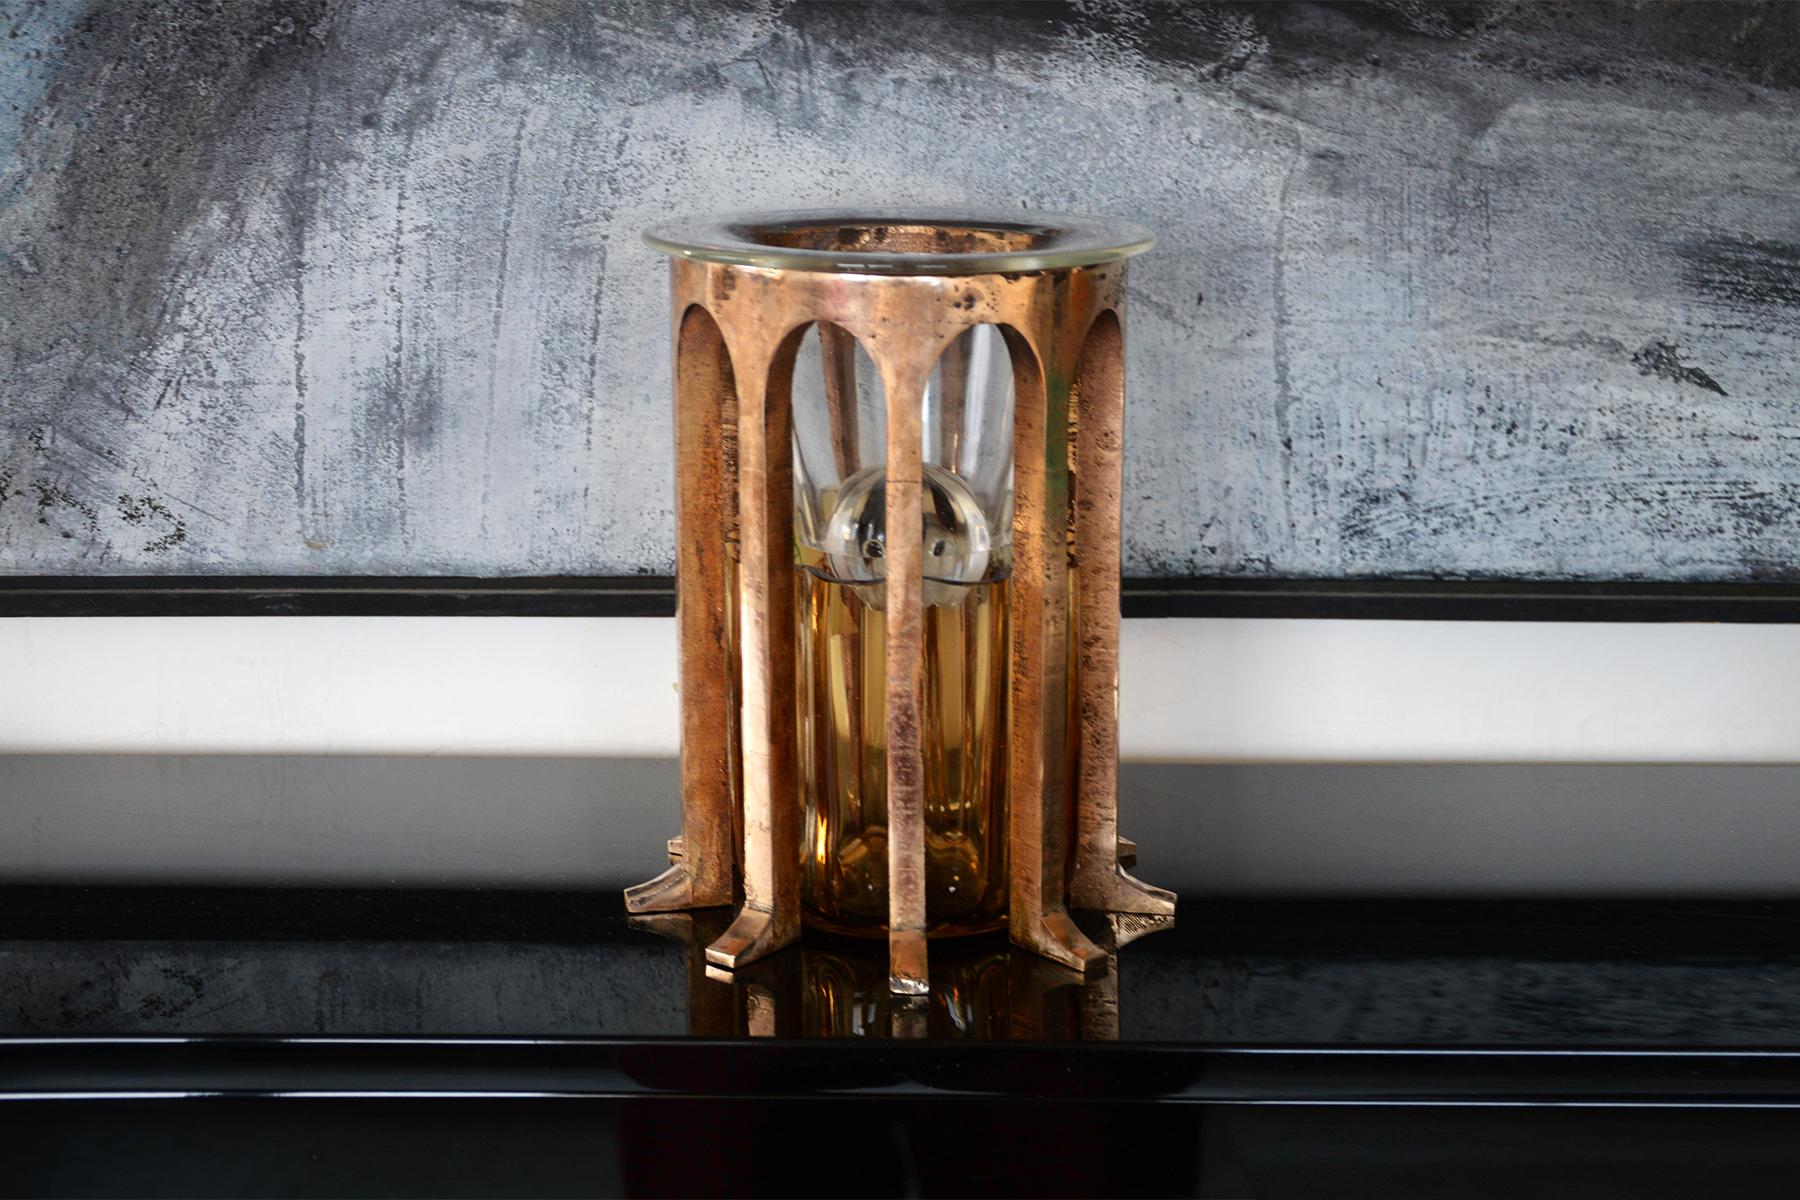 Créé en 2022, Abside est le fruit de la collaboration entre Fabien Barrero et l'Atelier George.
Le vase Abside est composé d'une couronne d'arcs en bronze massif. La partie en verre ambré est soufflée dans la structure même. Sur le dessus, il y a